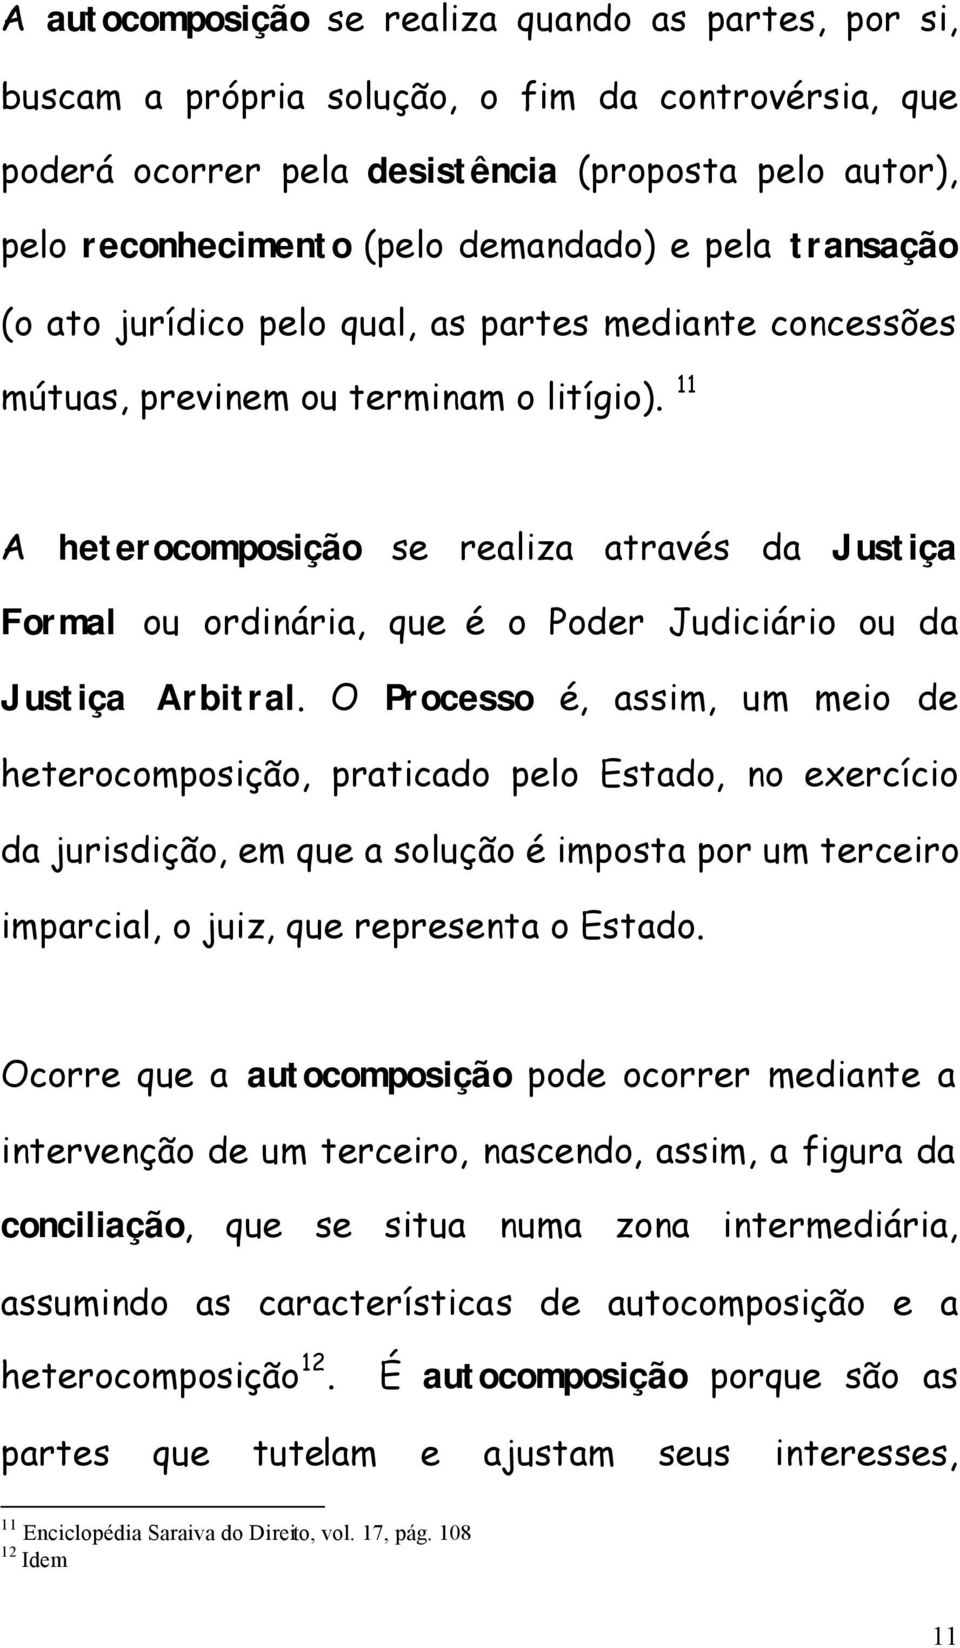 11 A heterocomposição se realiza através da Justiça Formal ou ordinária, que é o Poder Judiciário ou da Justiça Arbitral.